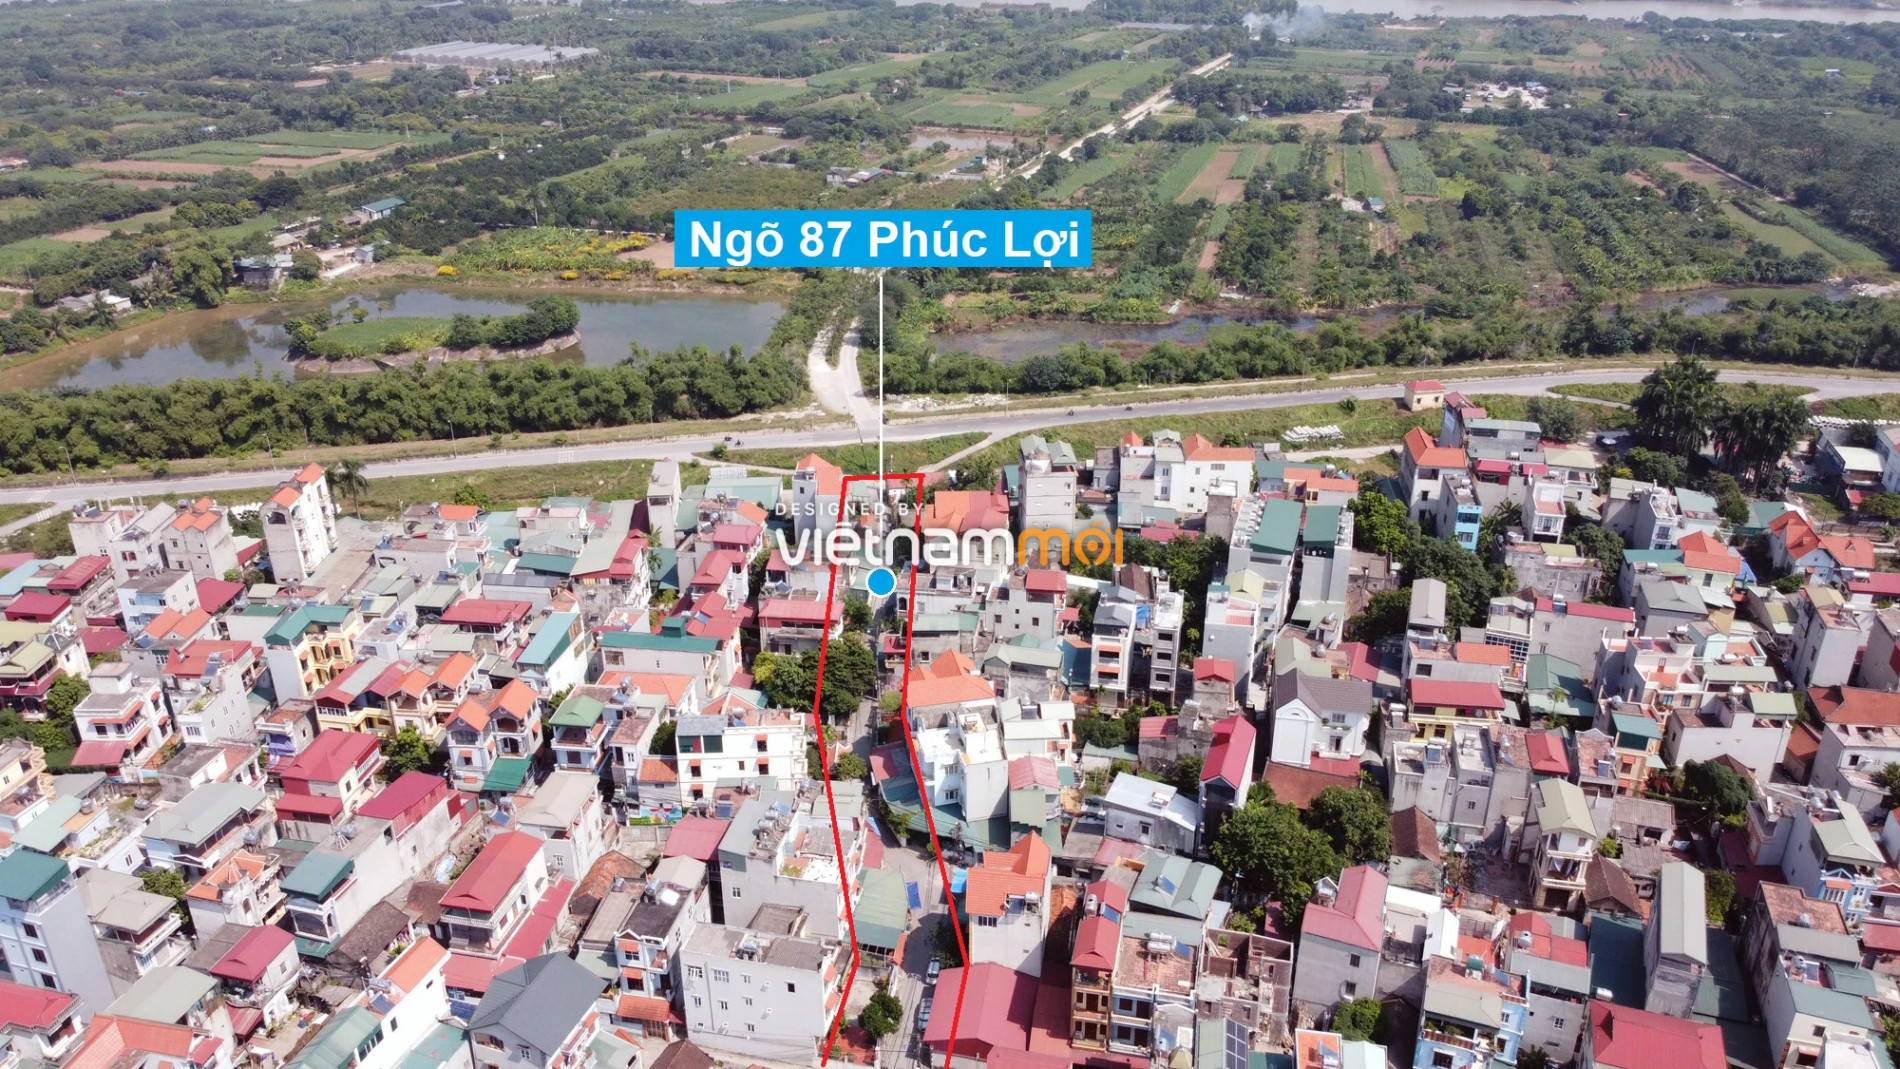 Những khu đất sắp thu hồi để mở đường ở phường Phúc Lợi, Long Biên, Hà Nội (phần 7) - Ảnh 8.